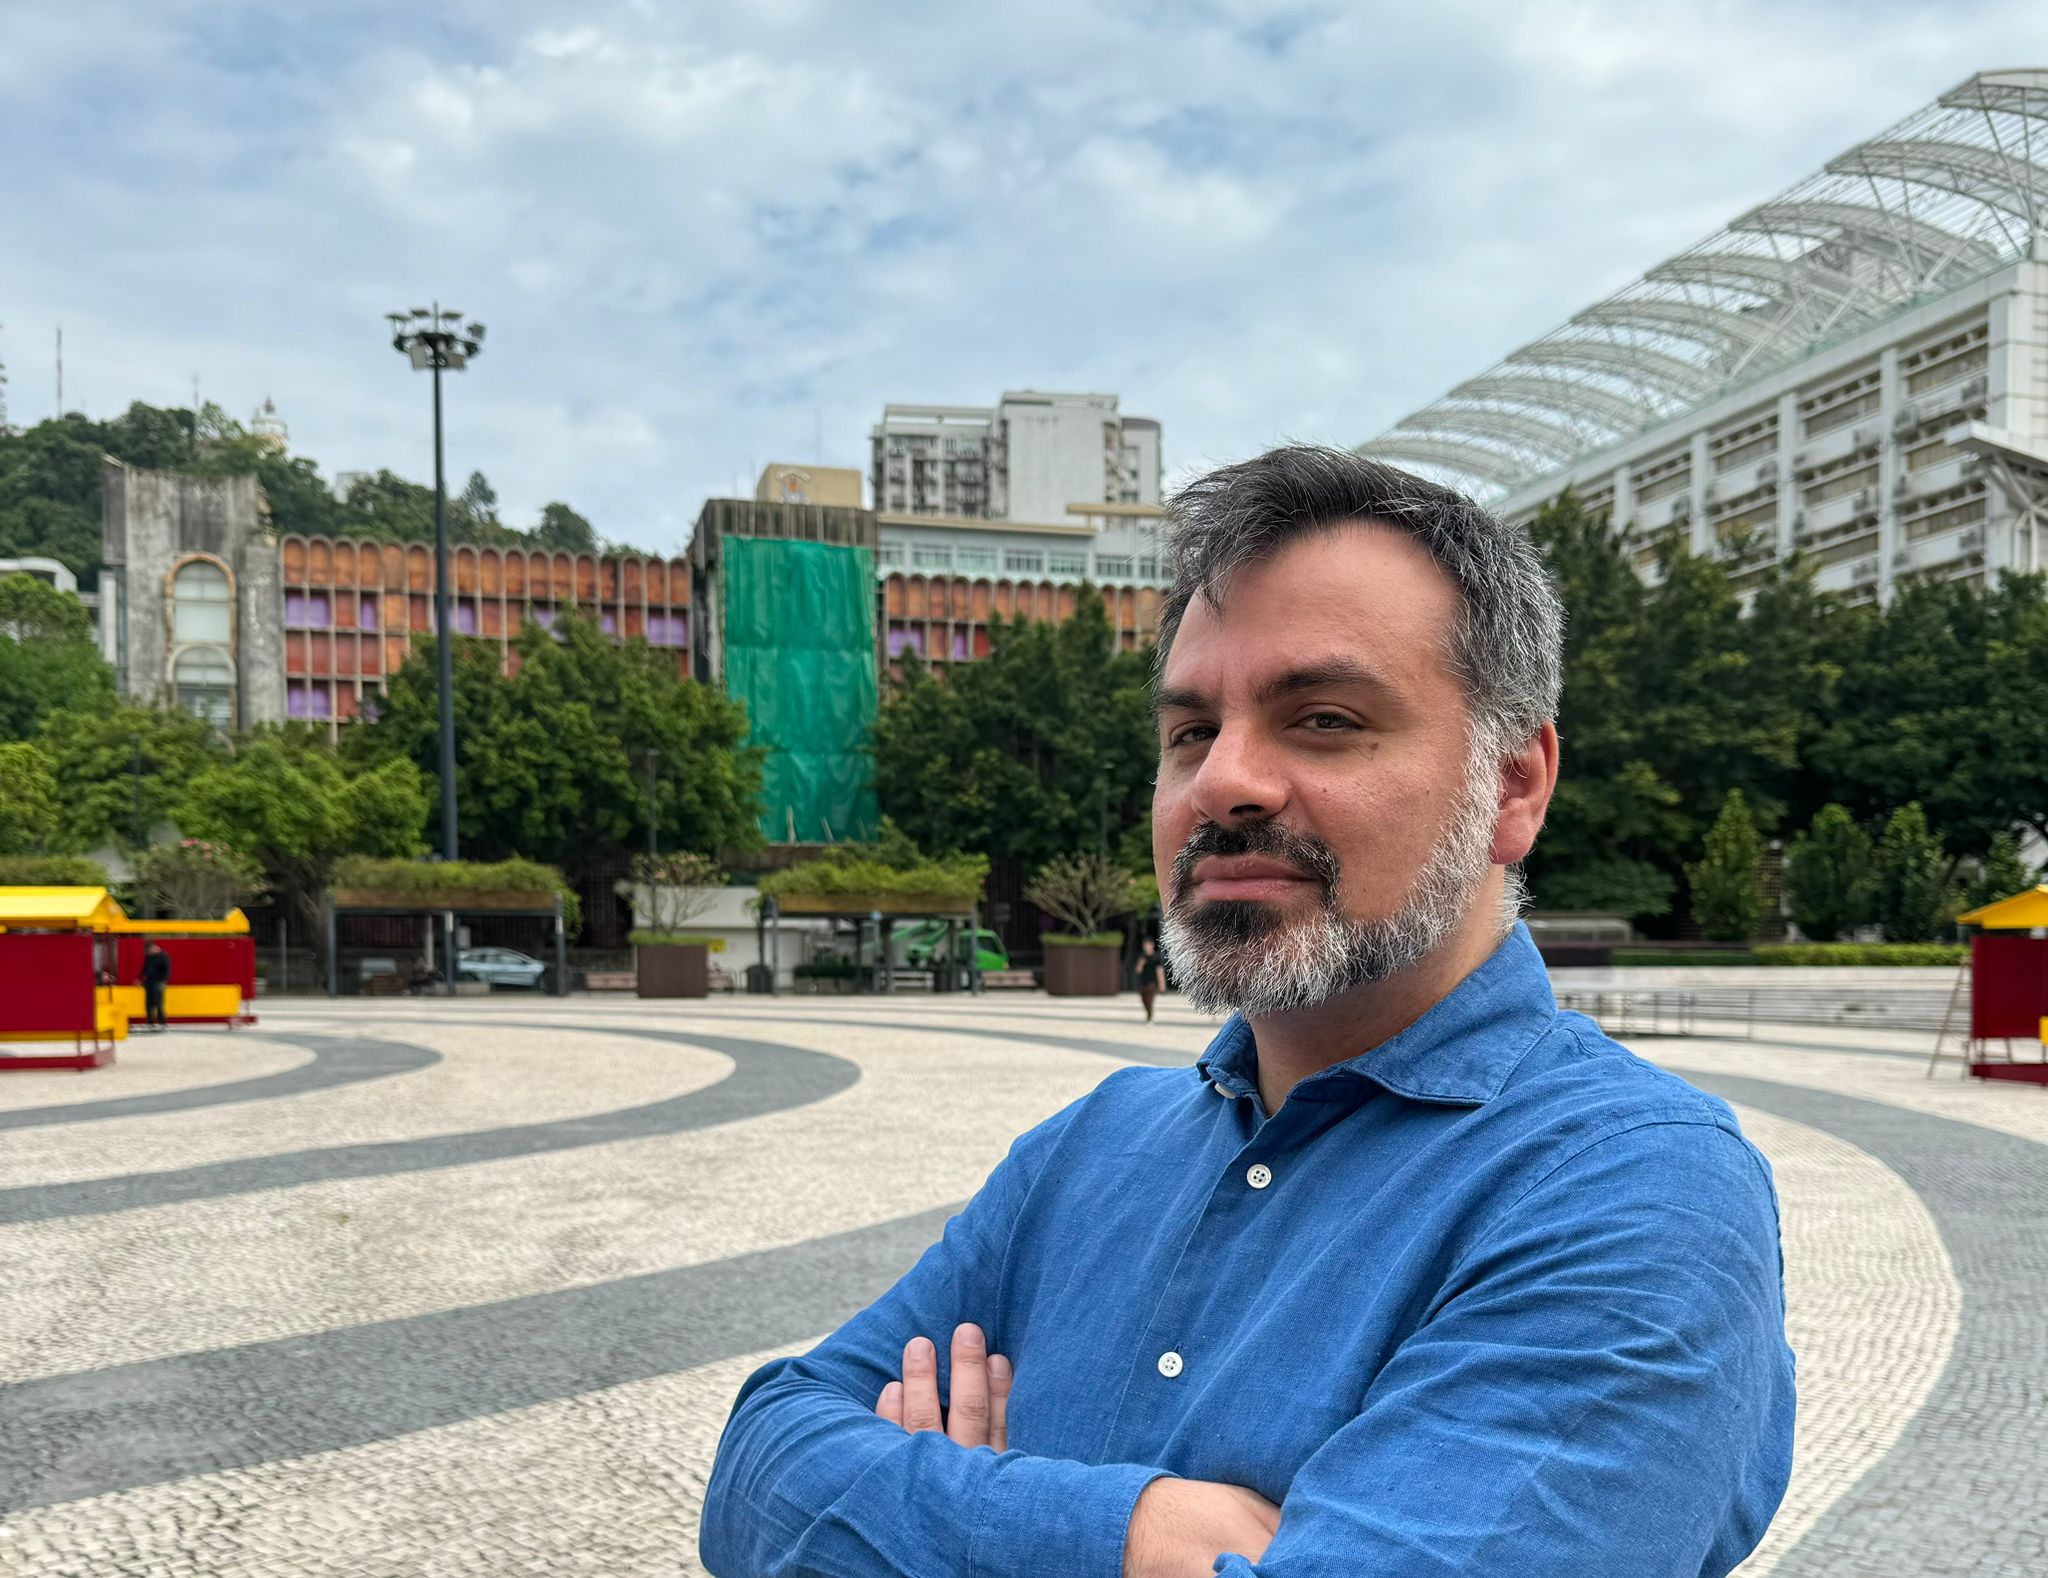 Nuno Fontarra, arquitecto: “Ocupamos o espaço que podemos”